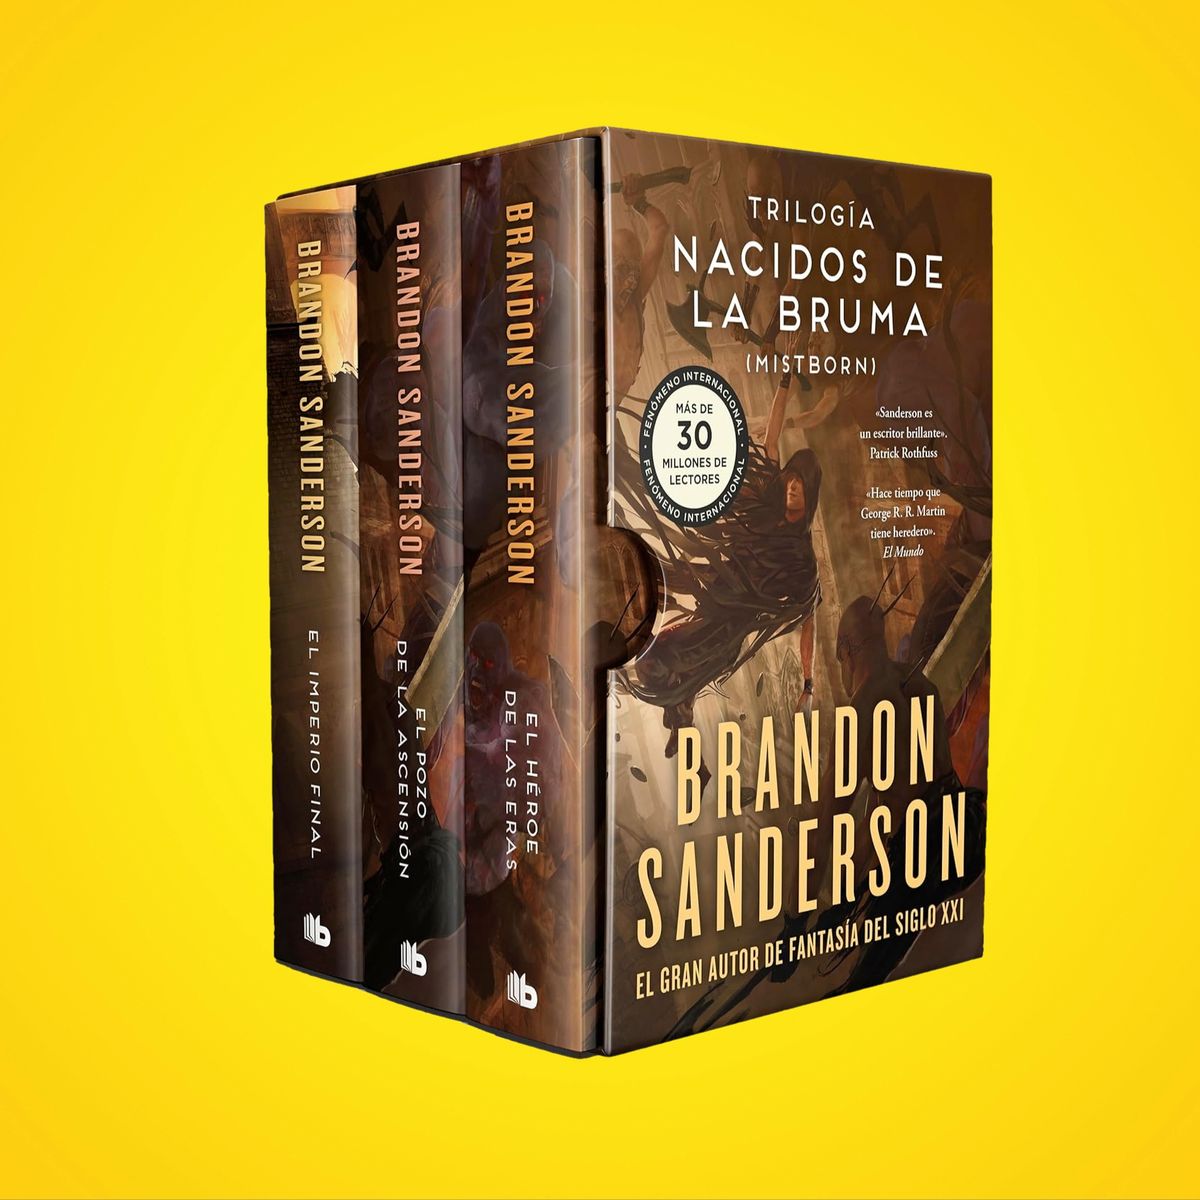 Esta trilogía de Brandon Sanderson tendrá juego de cartas y son tres libros  que merecen mucho la pena